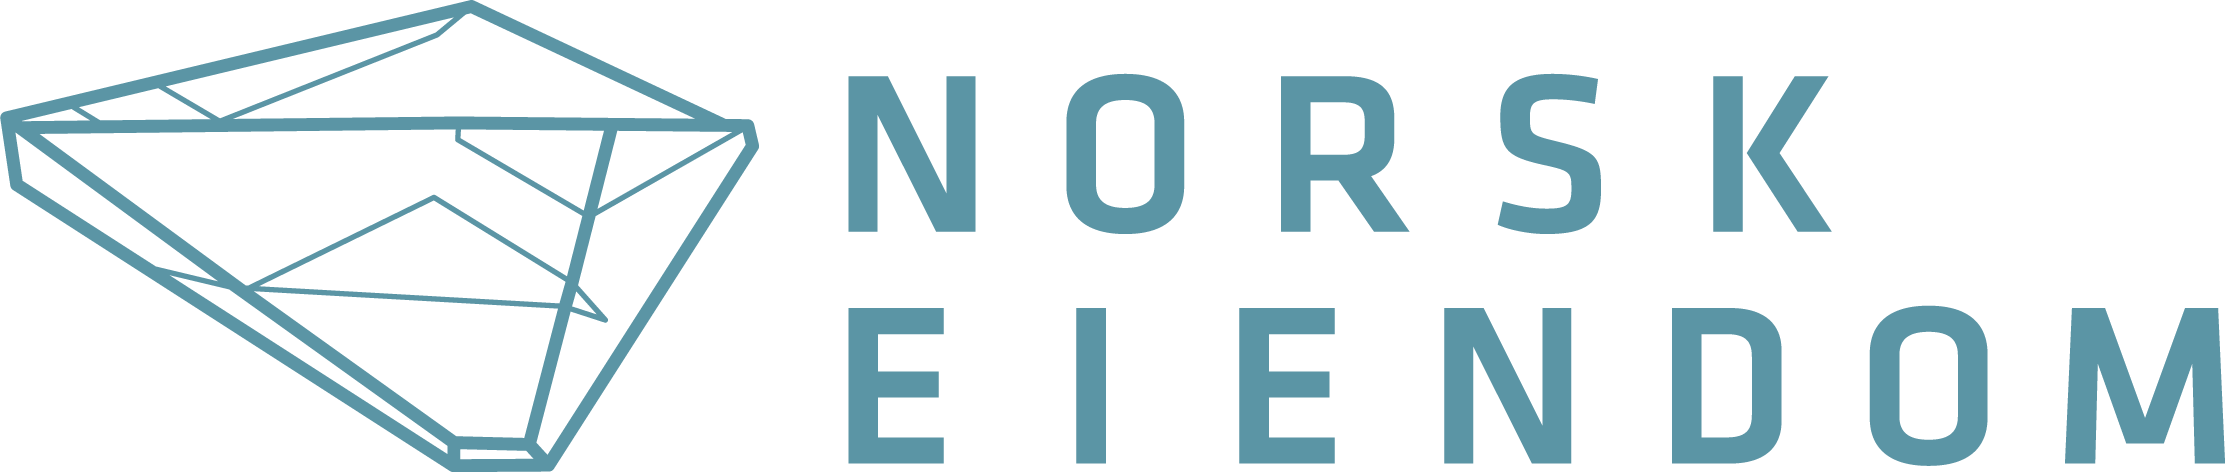 logo norsk eiendom